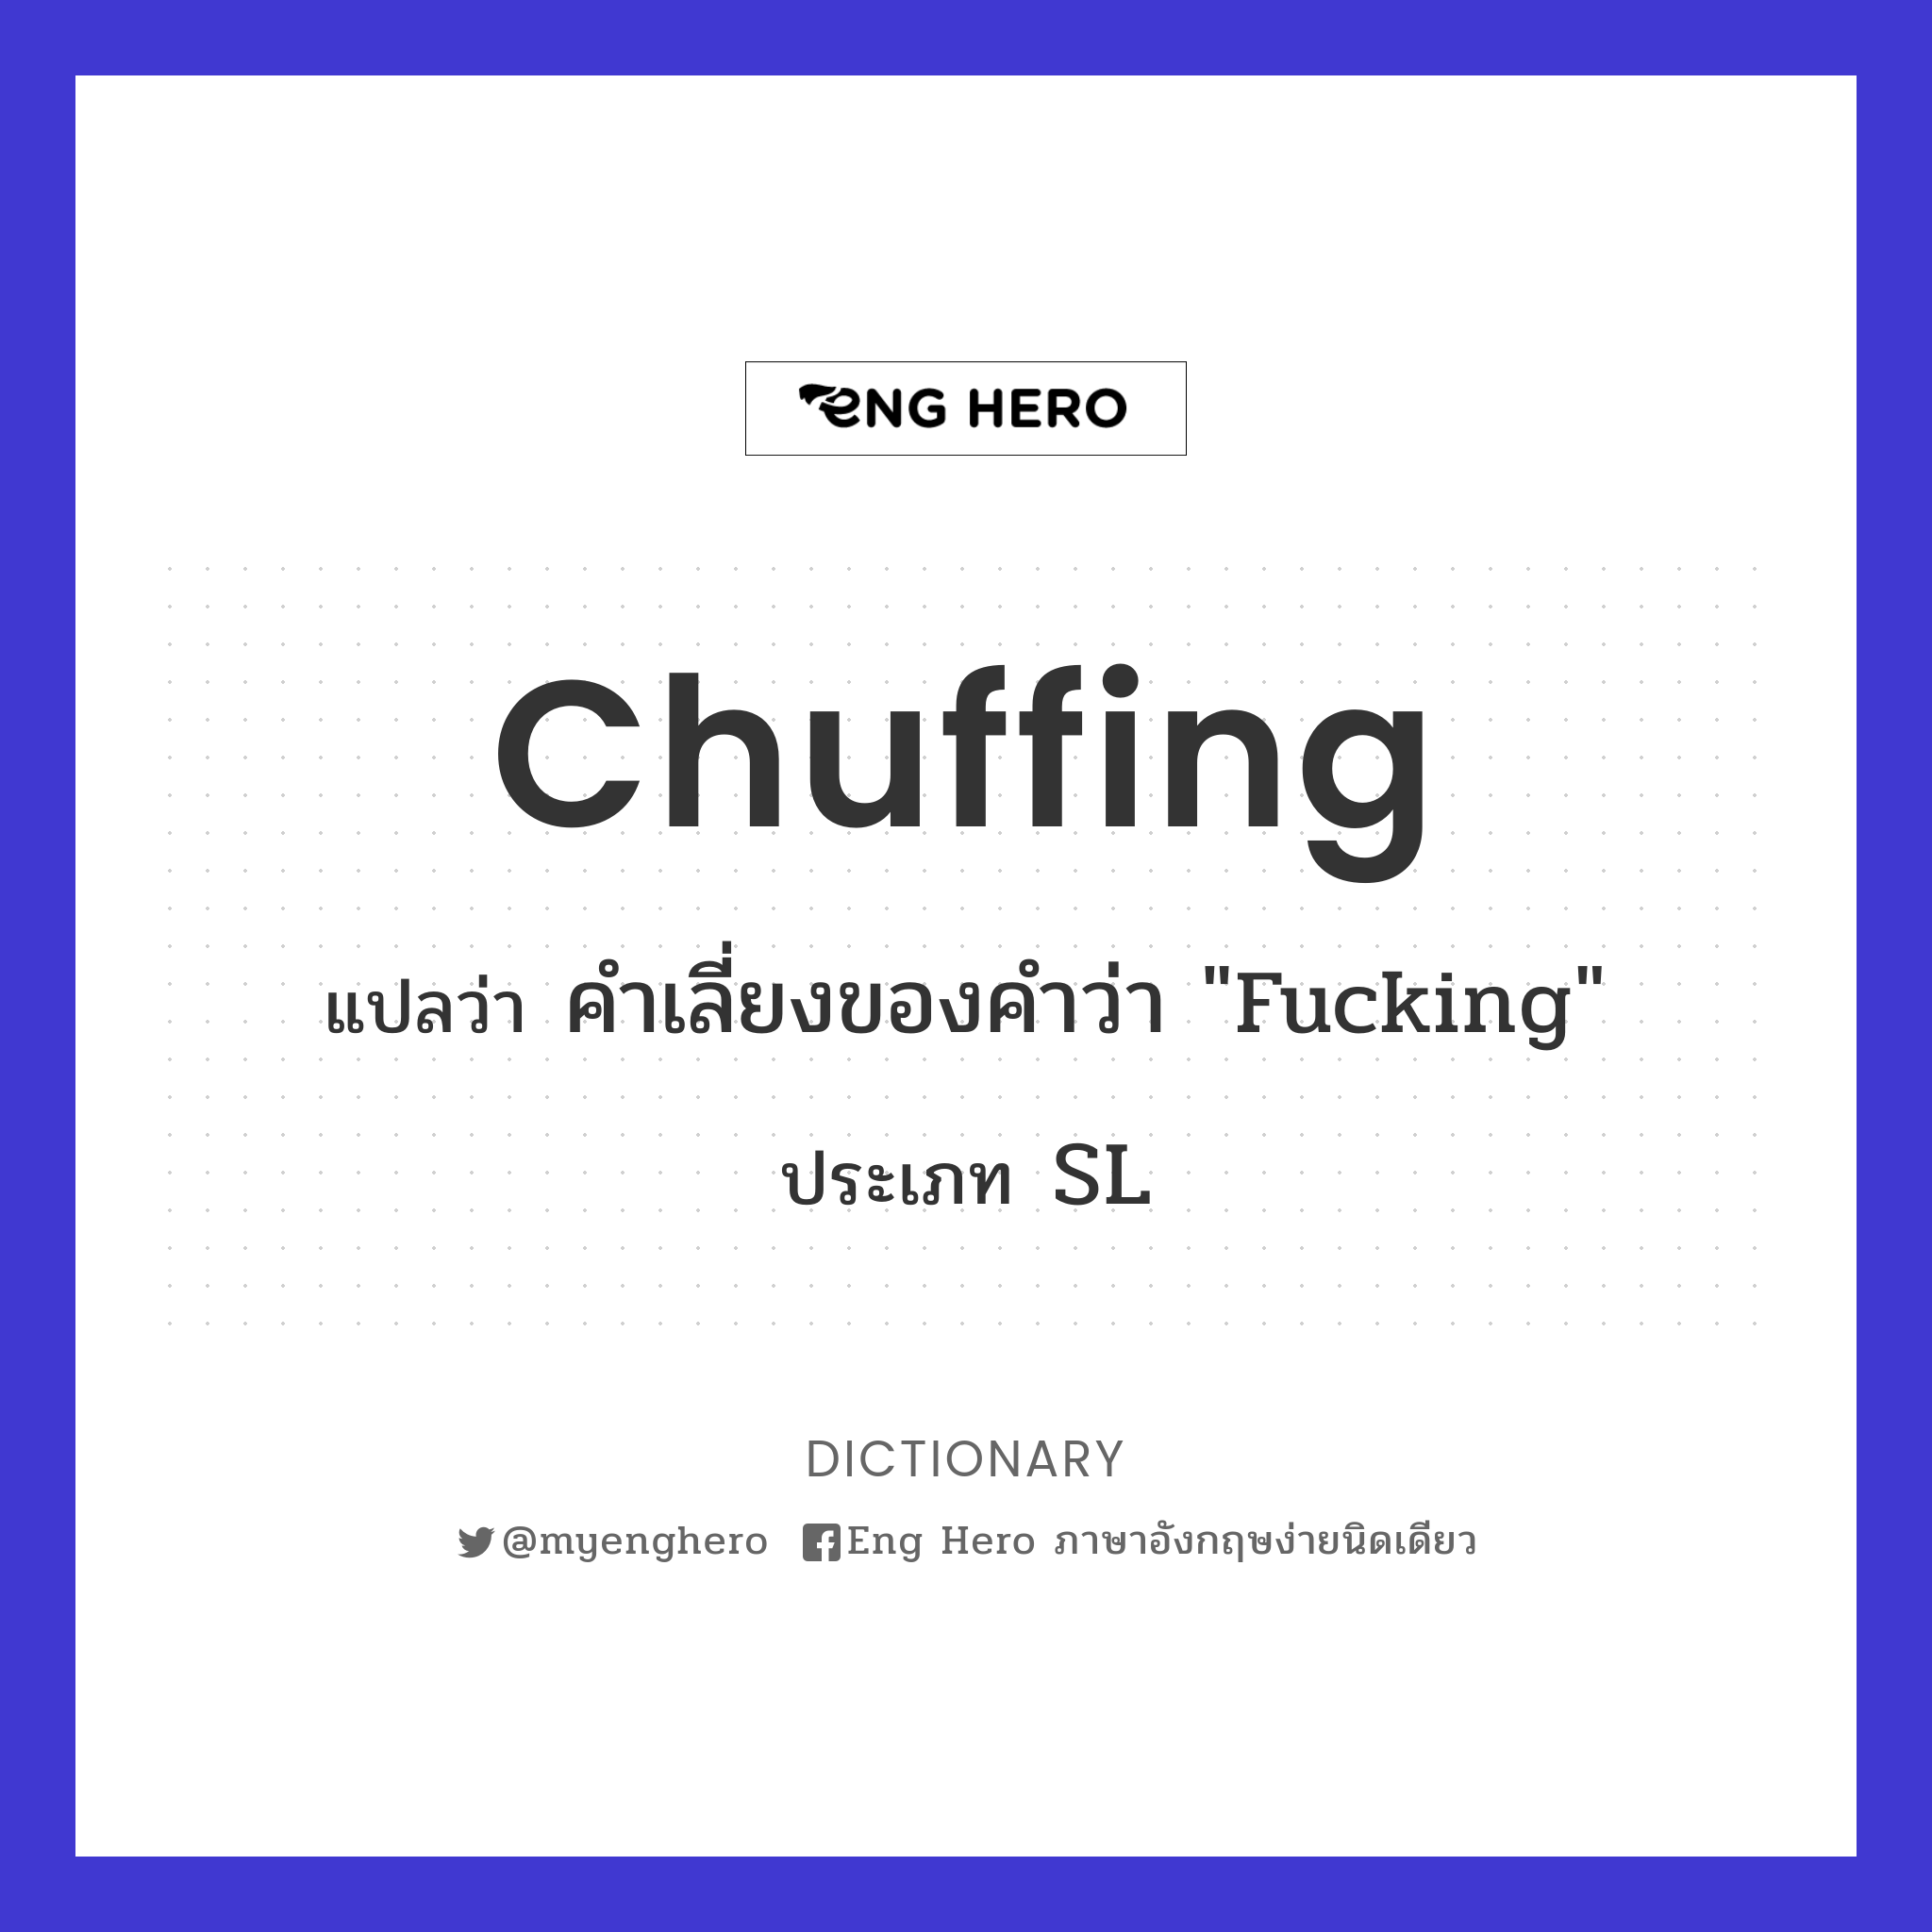 chuffing